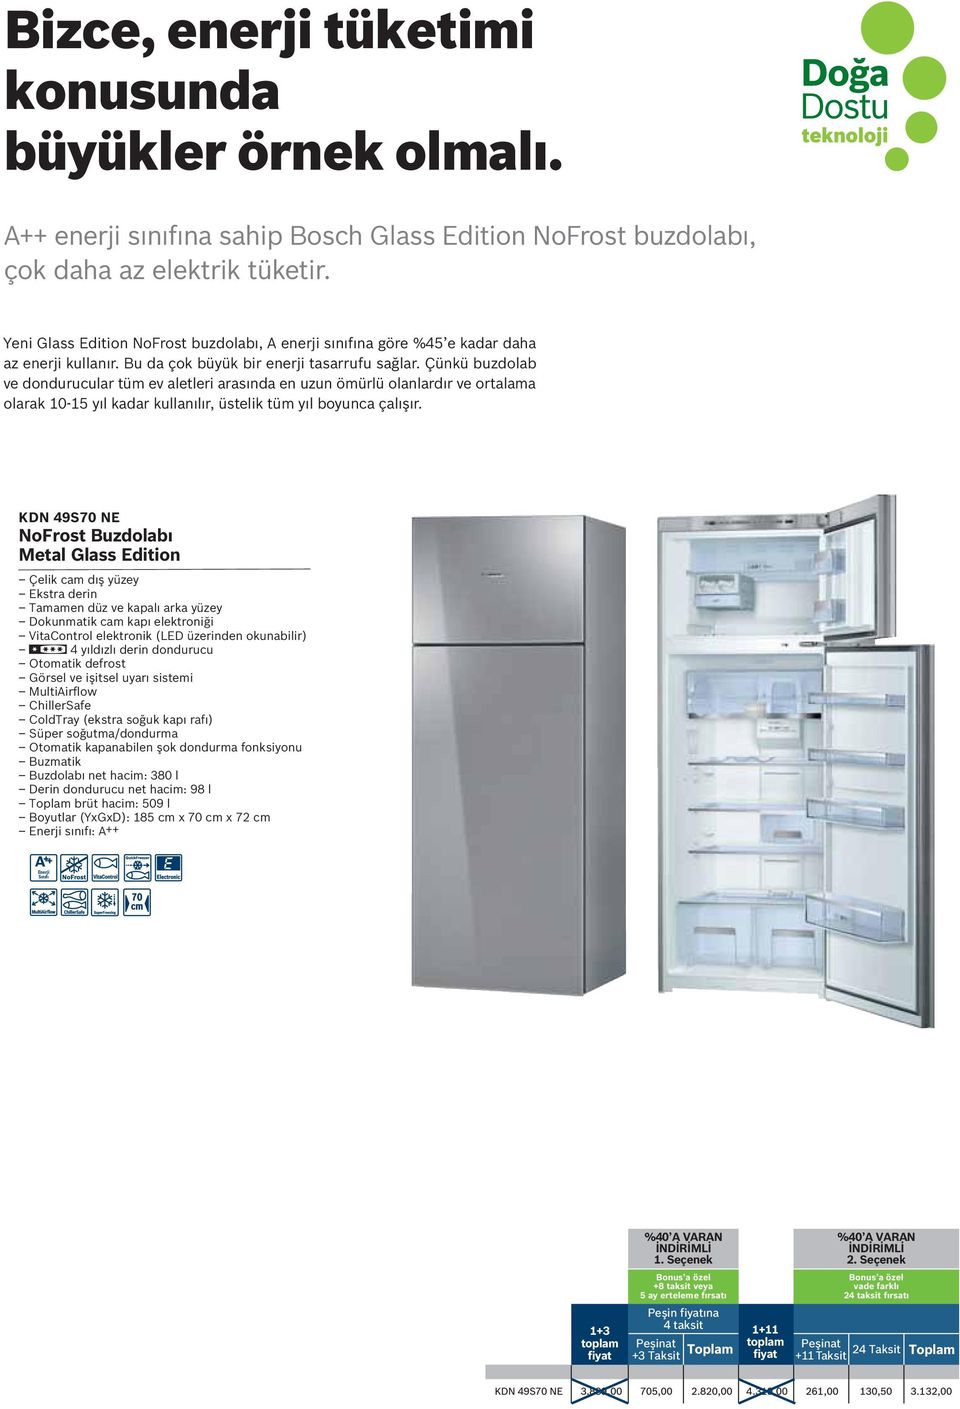 Çünkü buzdolab ve dondurucular tüm ev aletleri arasında en uzun ömürlü olanlardır ve ortalama olarak 10-15 yıl kadar kullanılır, üstelik tüm yıl boyunca çalışır.